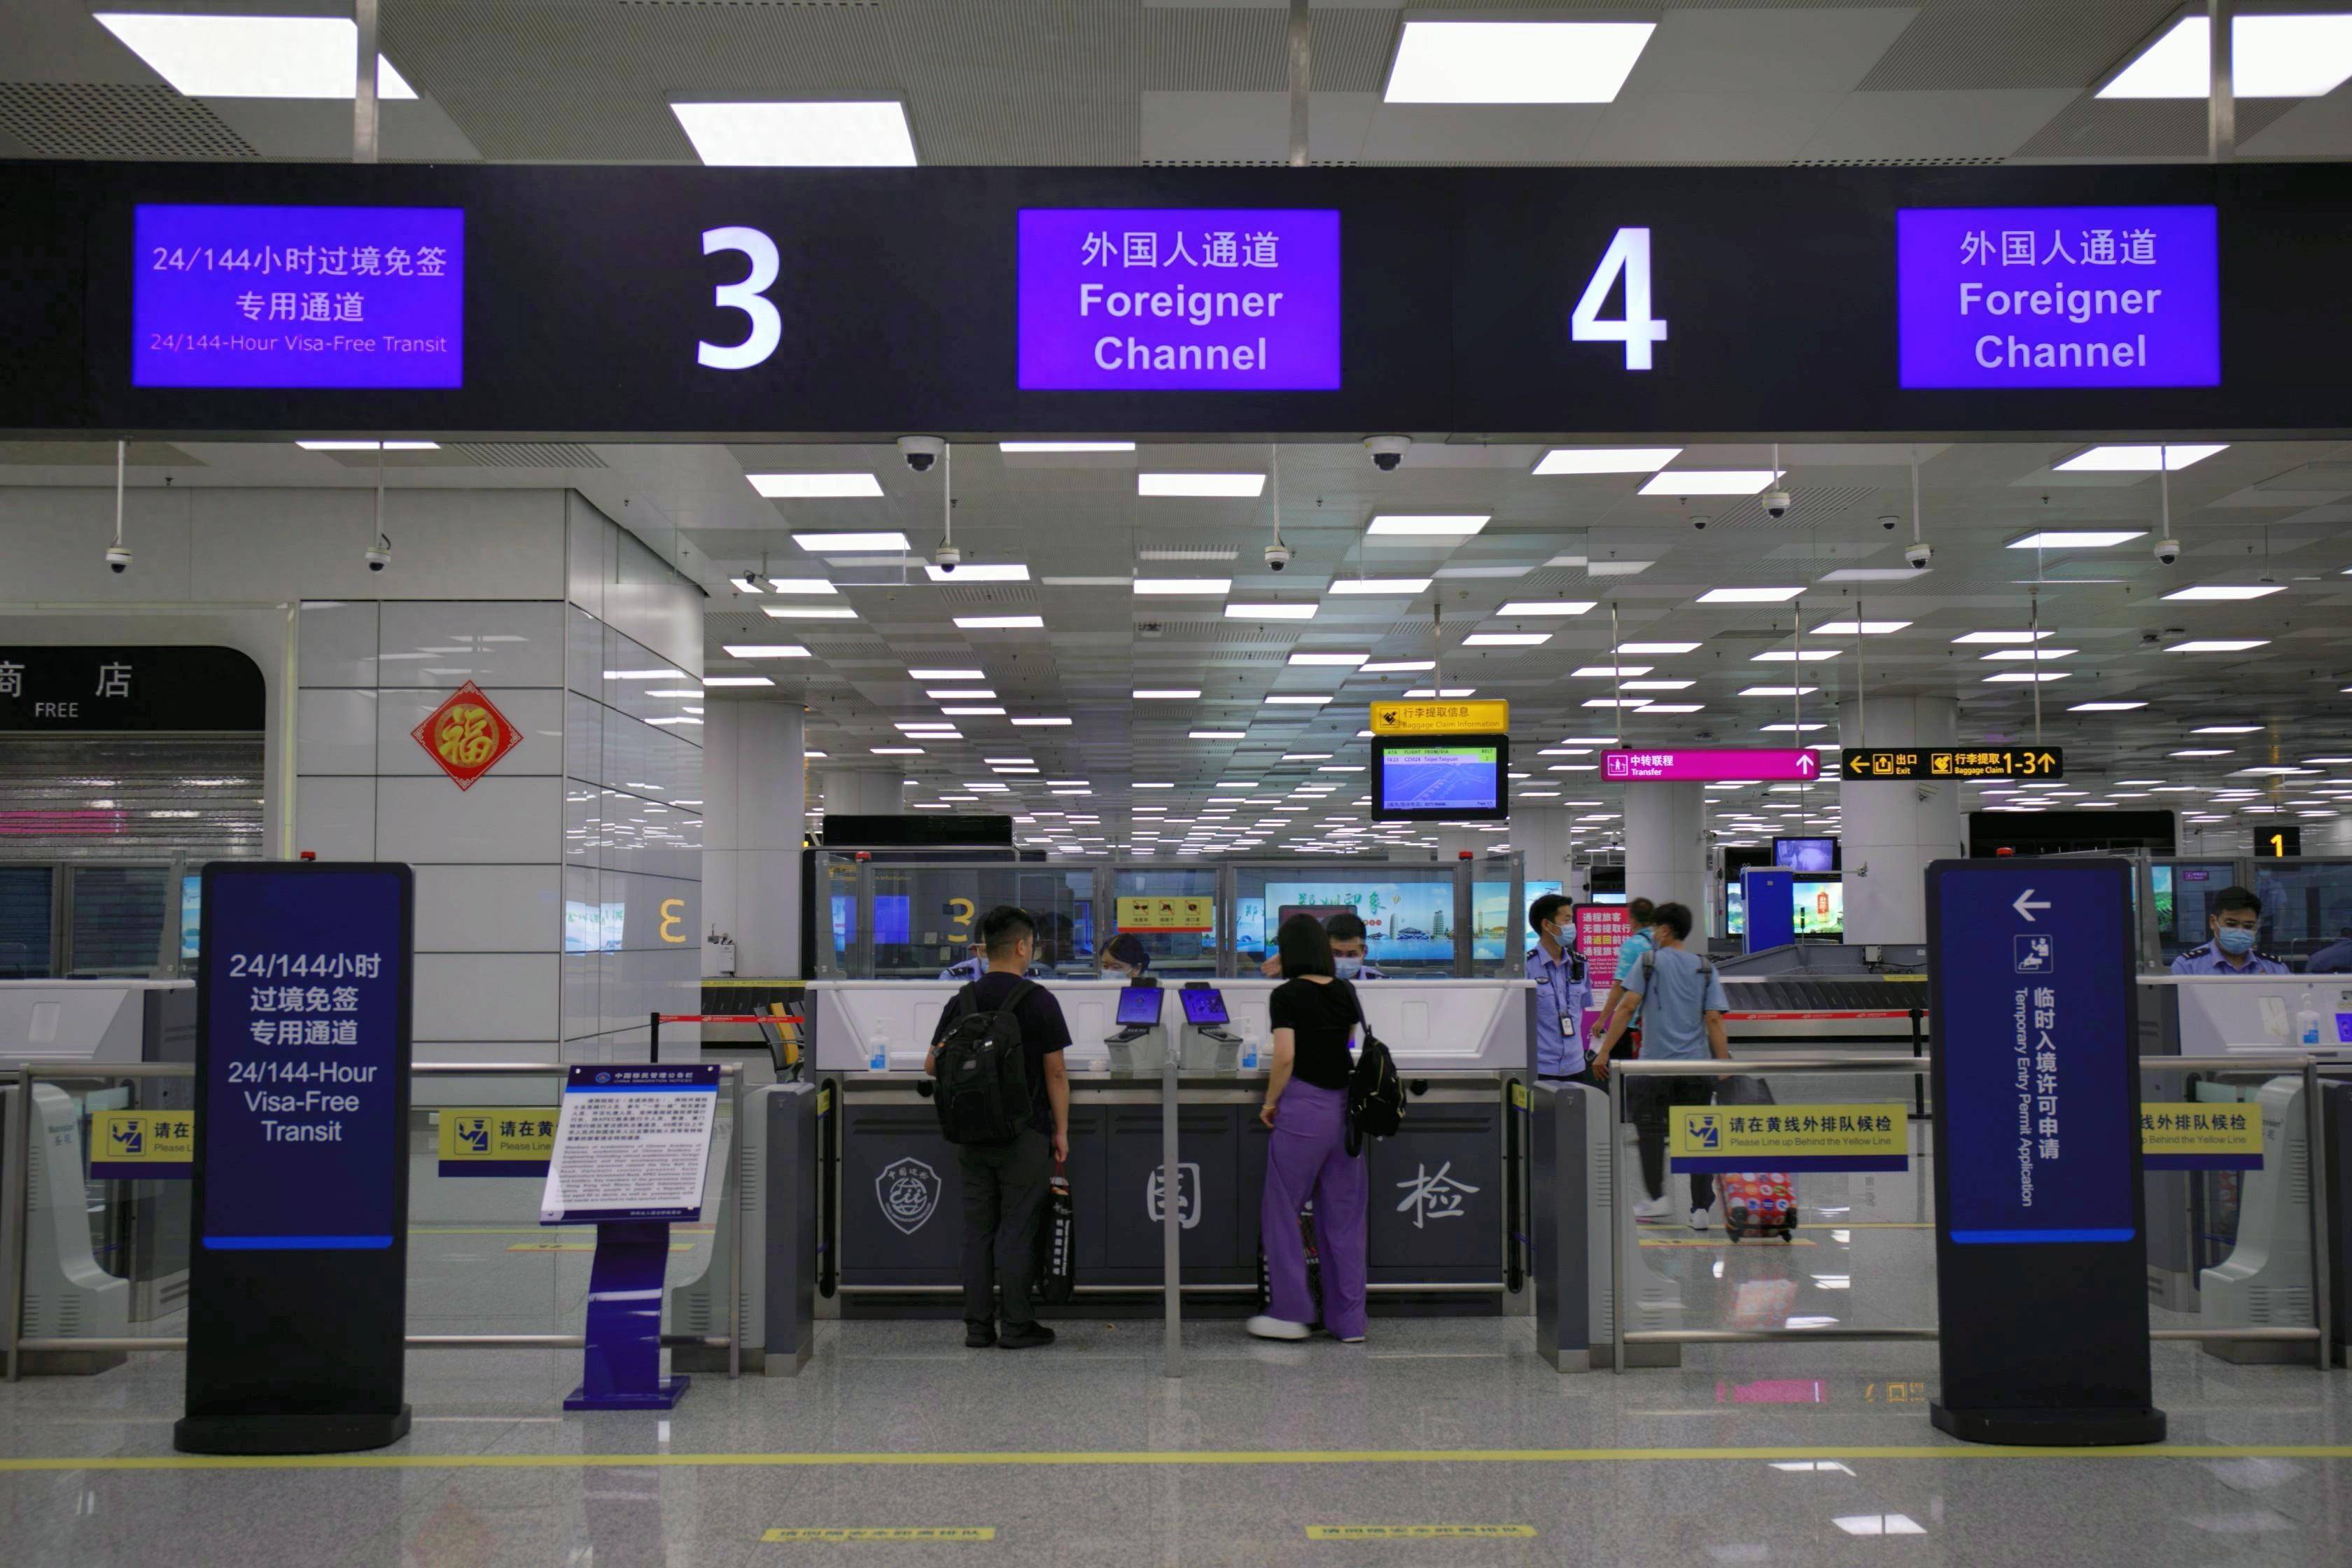 郑州机场设置144小时过境免签手续办理区域及通道